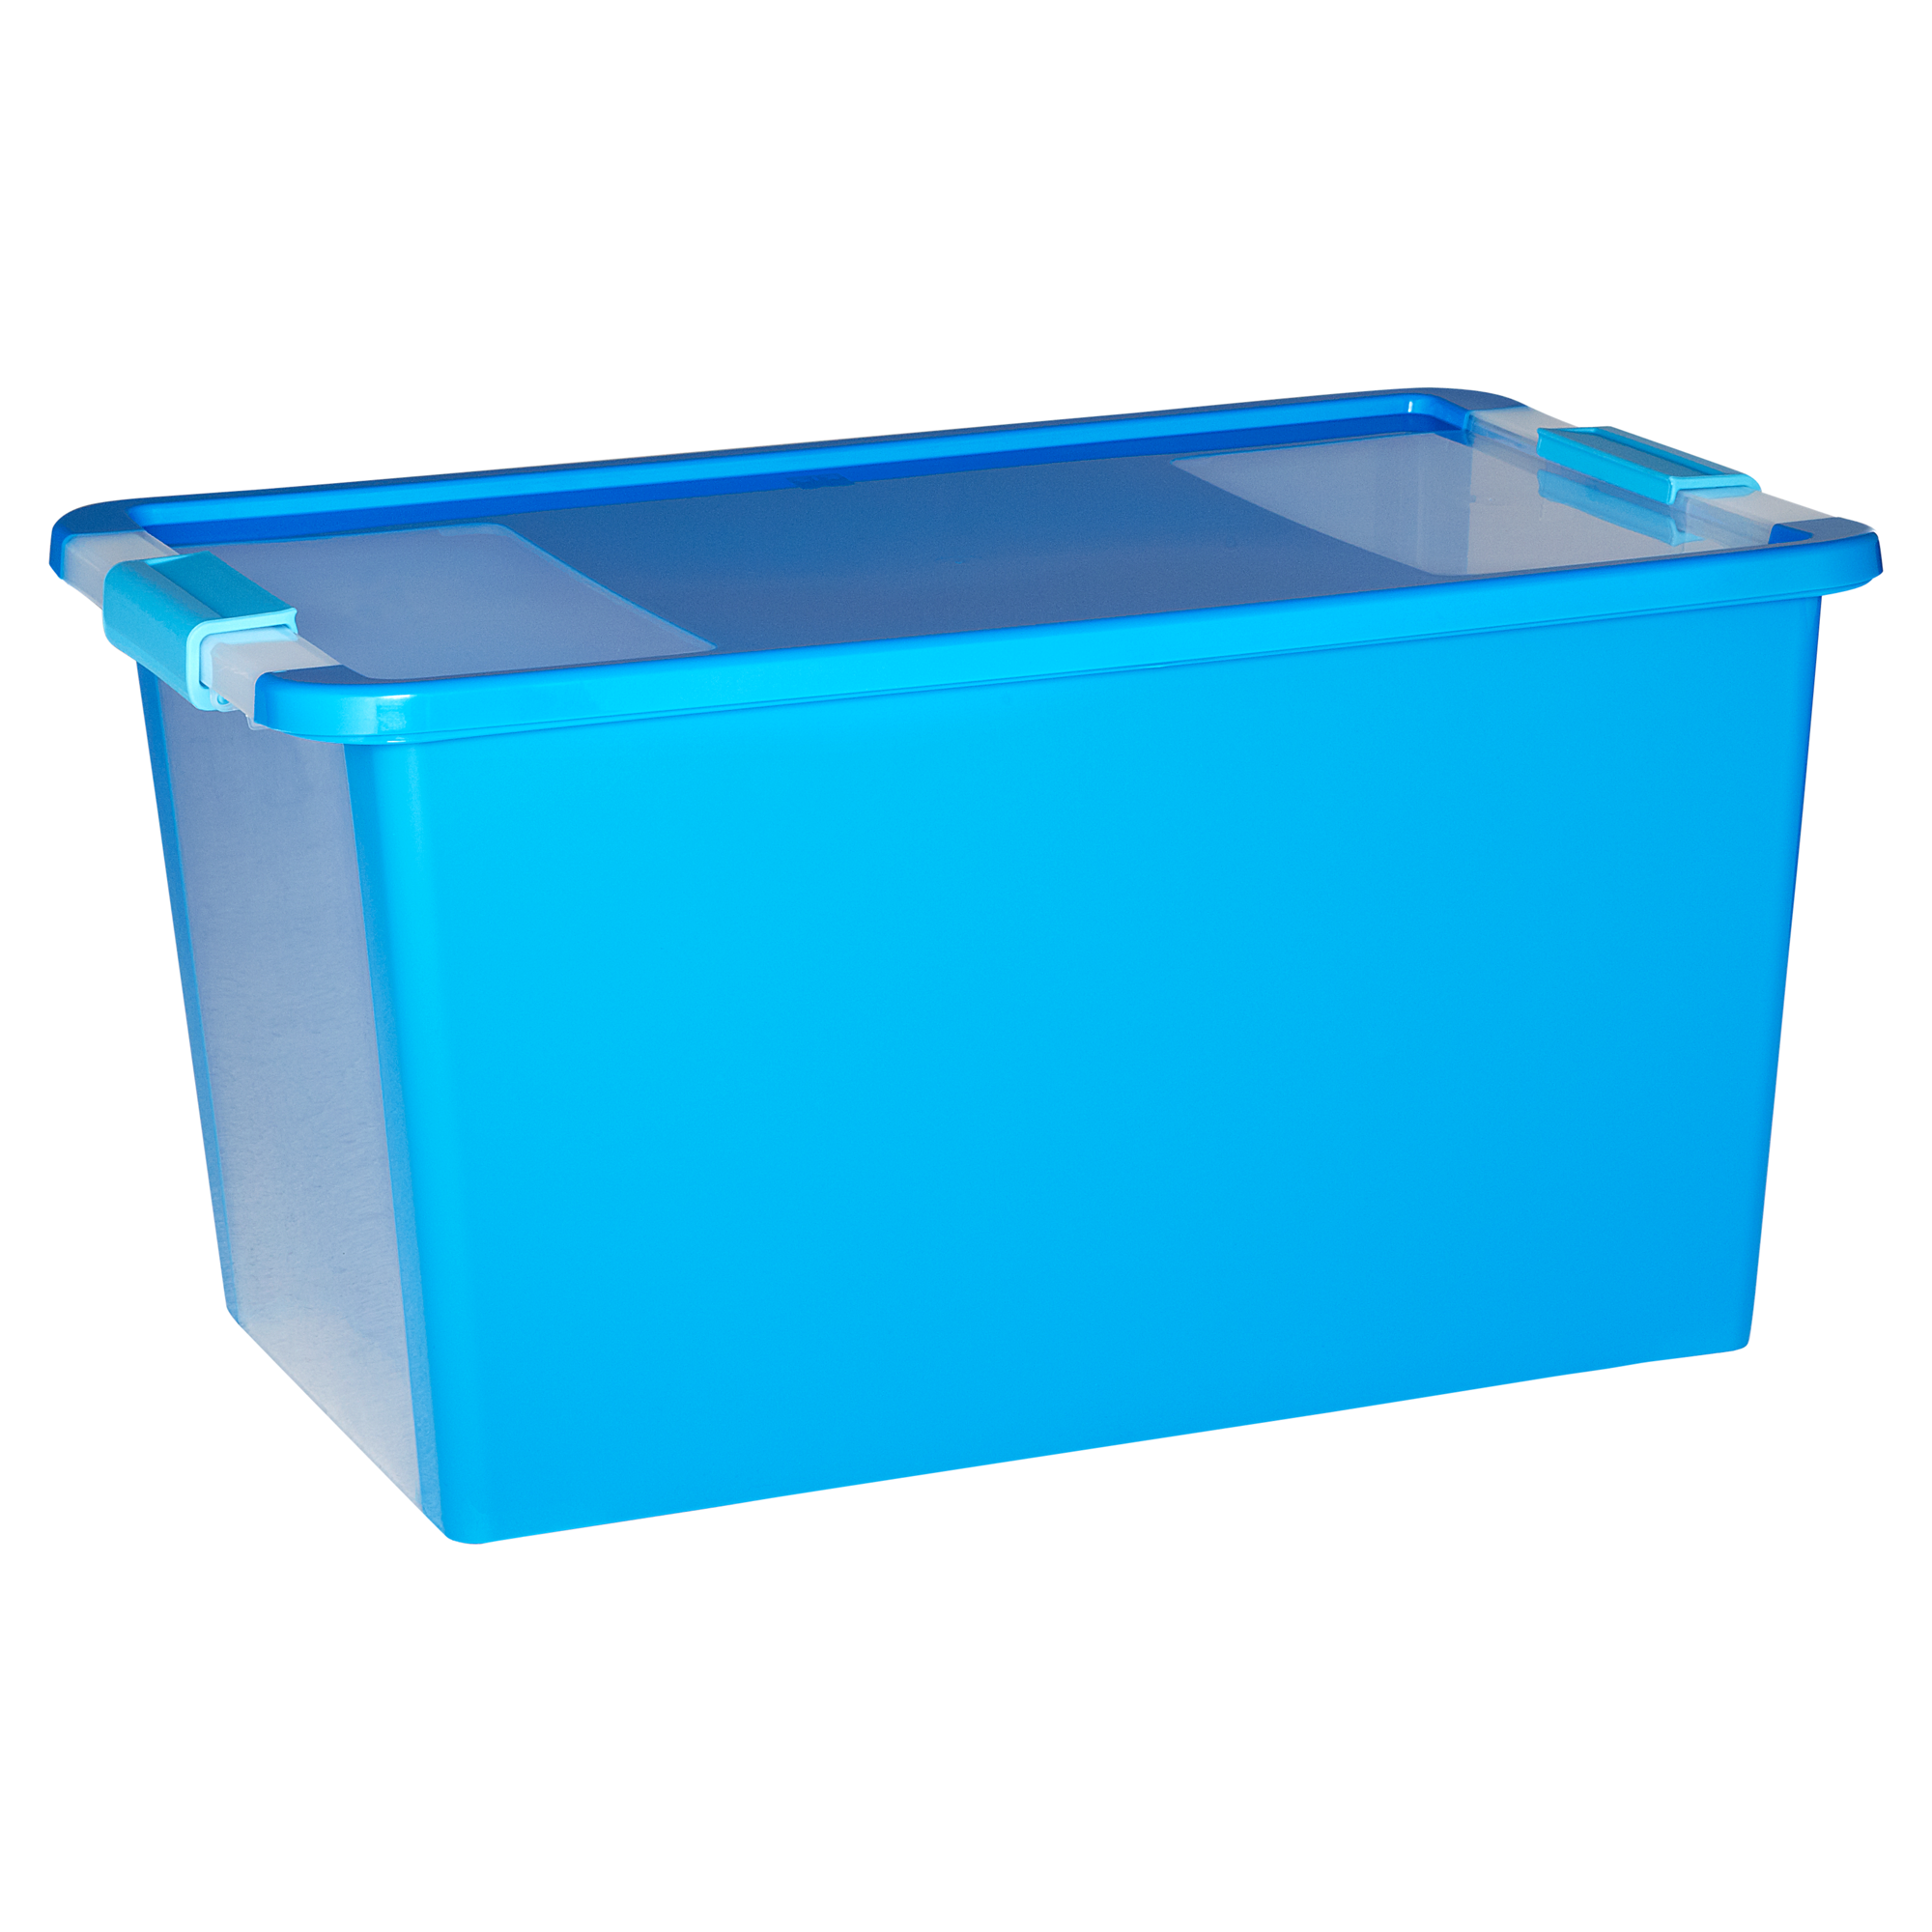 Aufbewahrungsbox Bi Box M blau 55 x 35 x 19 cm + product picture